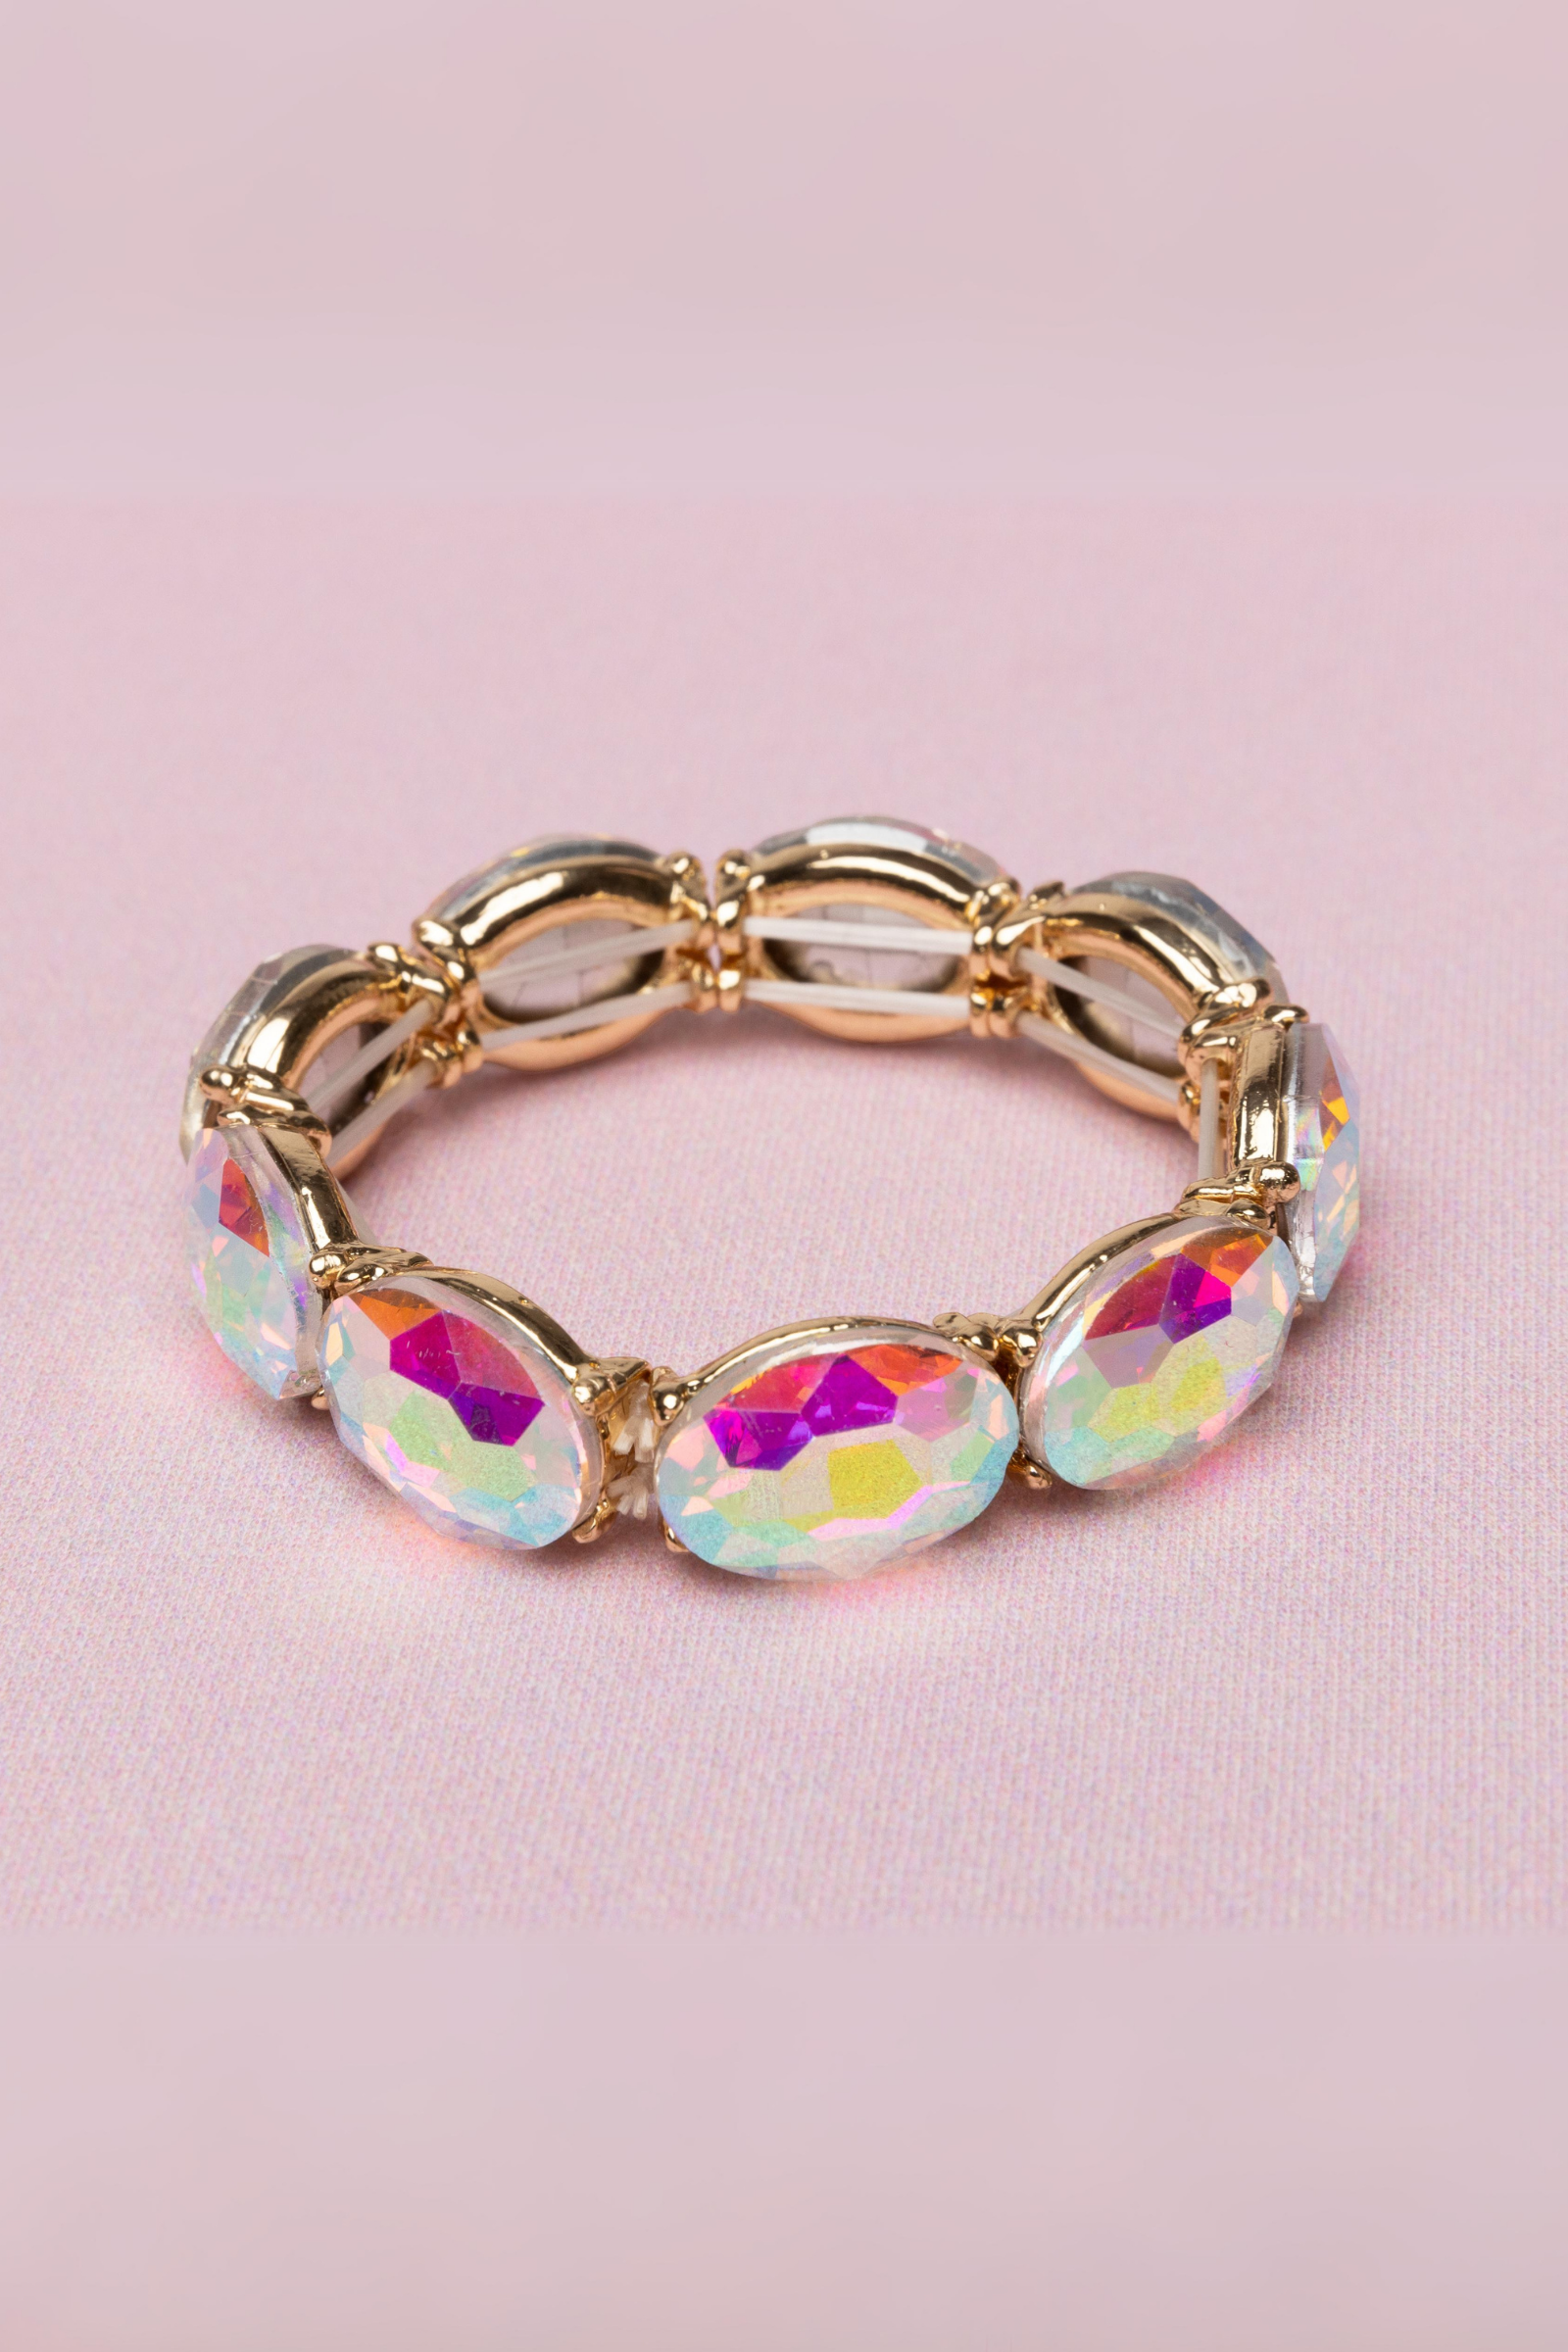 Boutique Chic Aurora Borealis Gem Bracelet